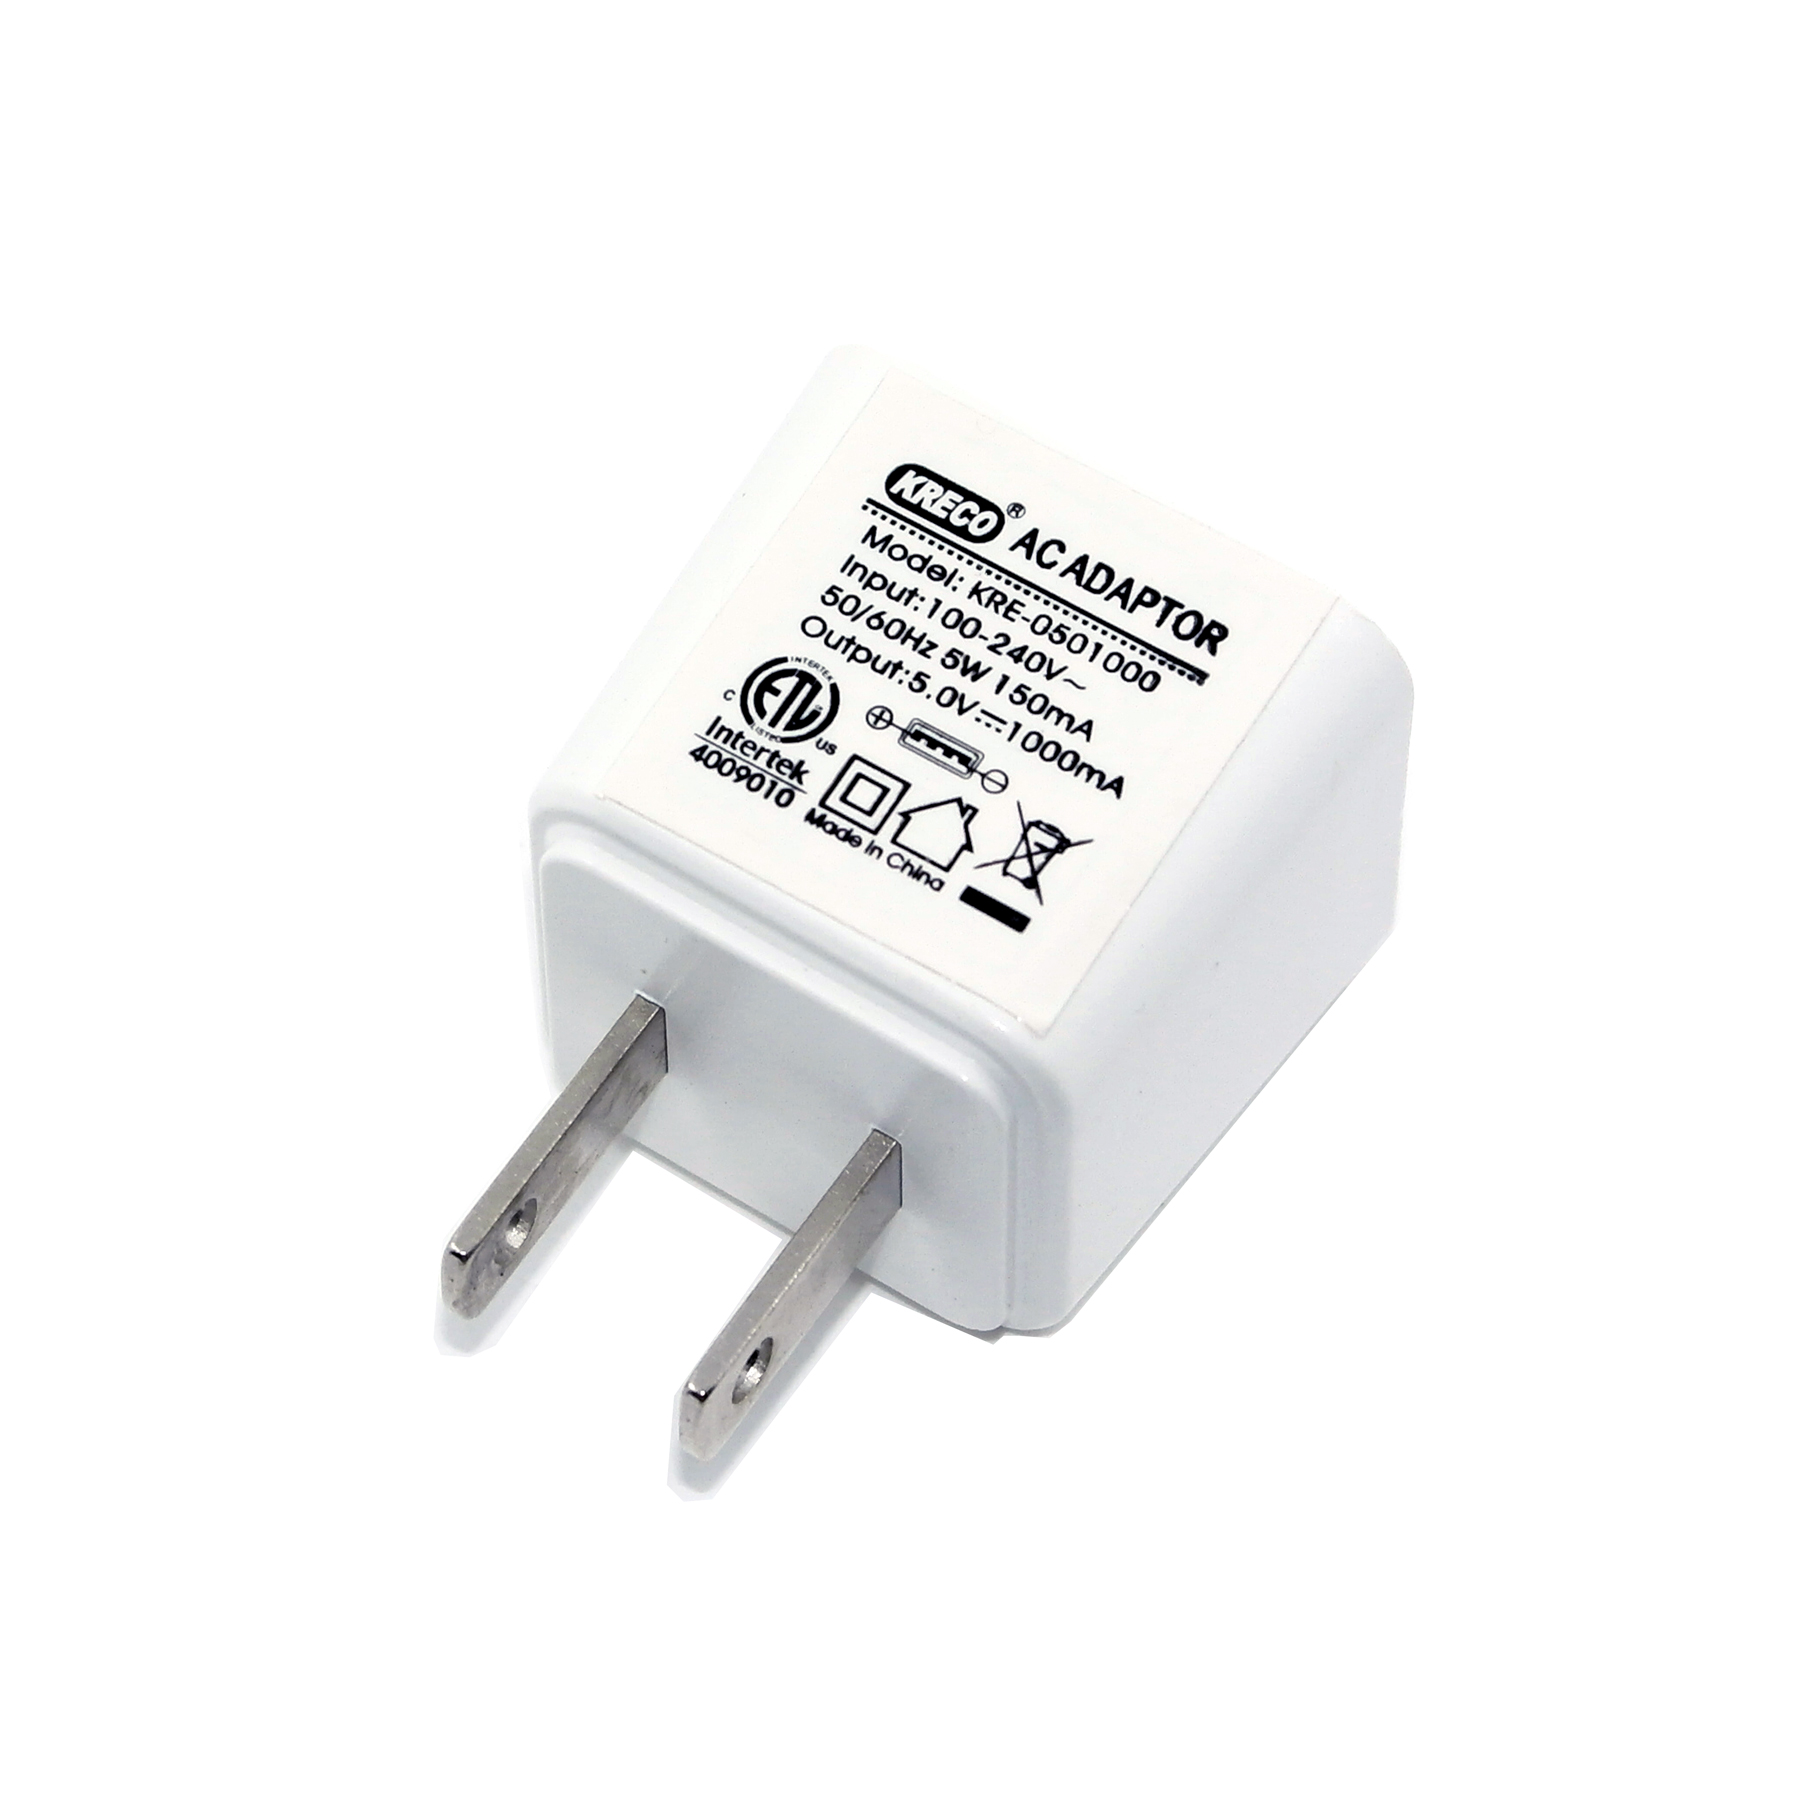 KRE-0501000,5V 1A 5W UL ETL certified charger